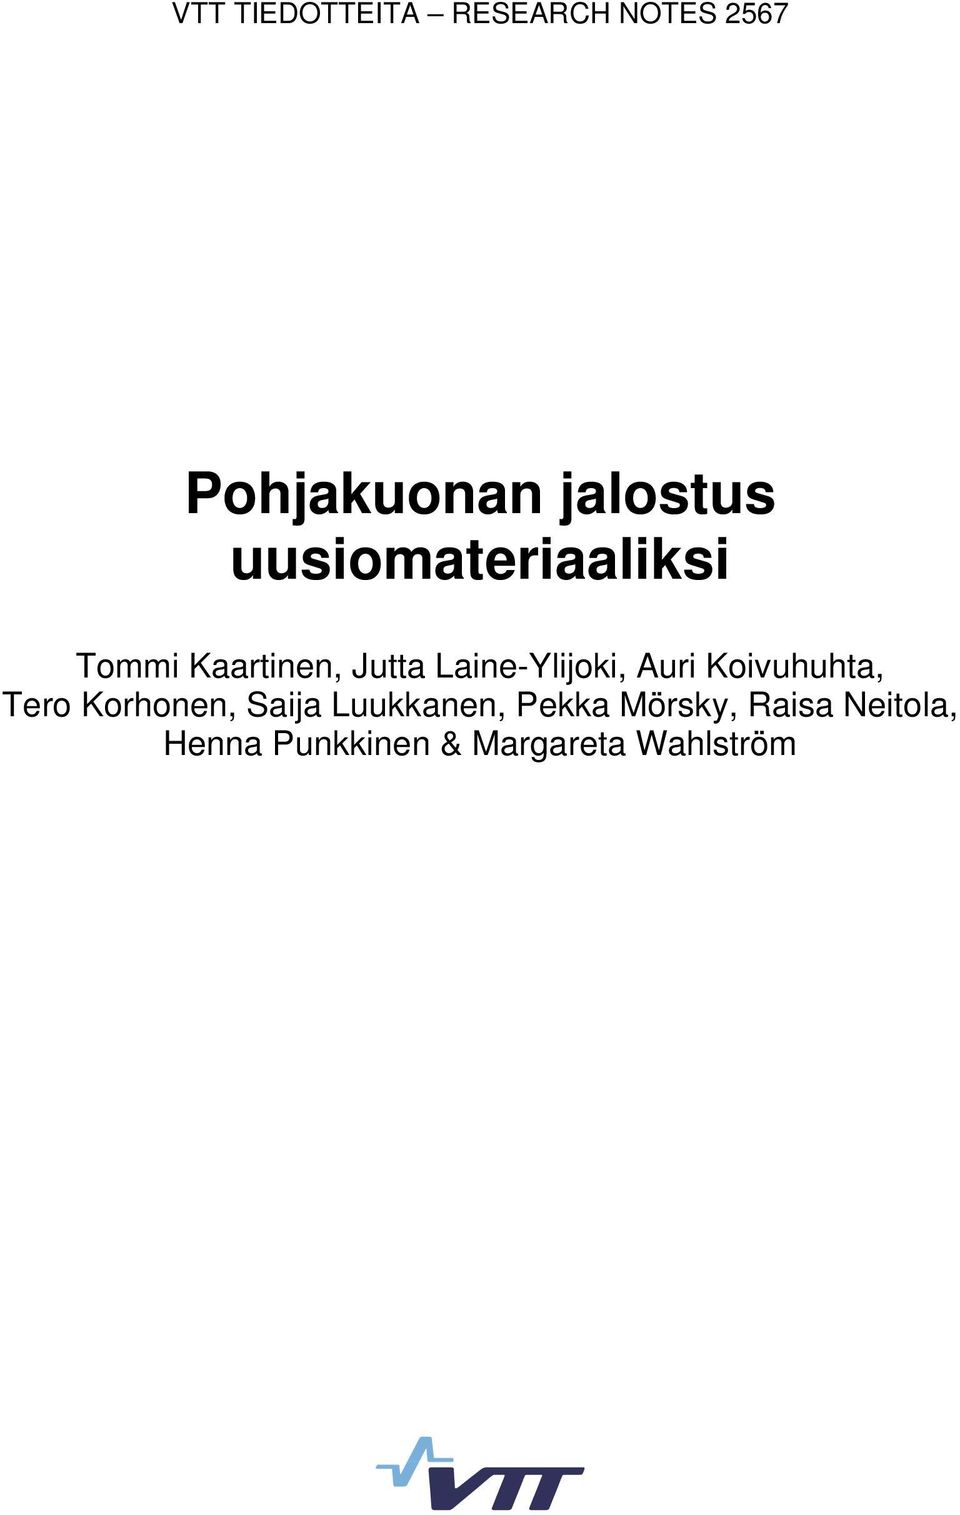 Auri Koivuhuhta, Tero Korhonen, Saija Luukkanen, Pekka